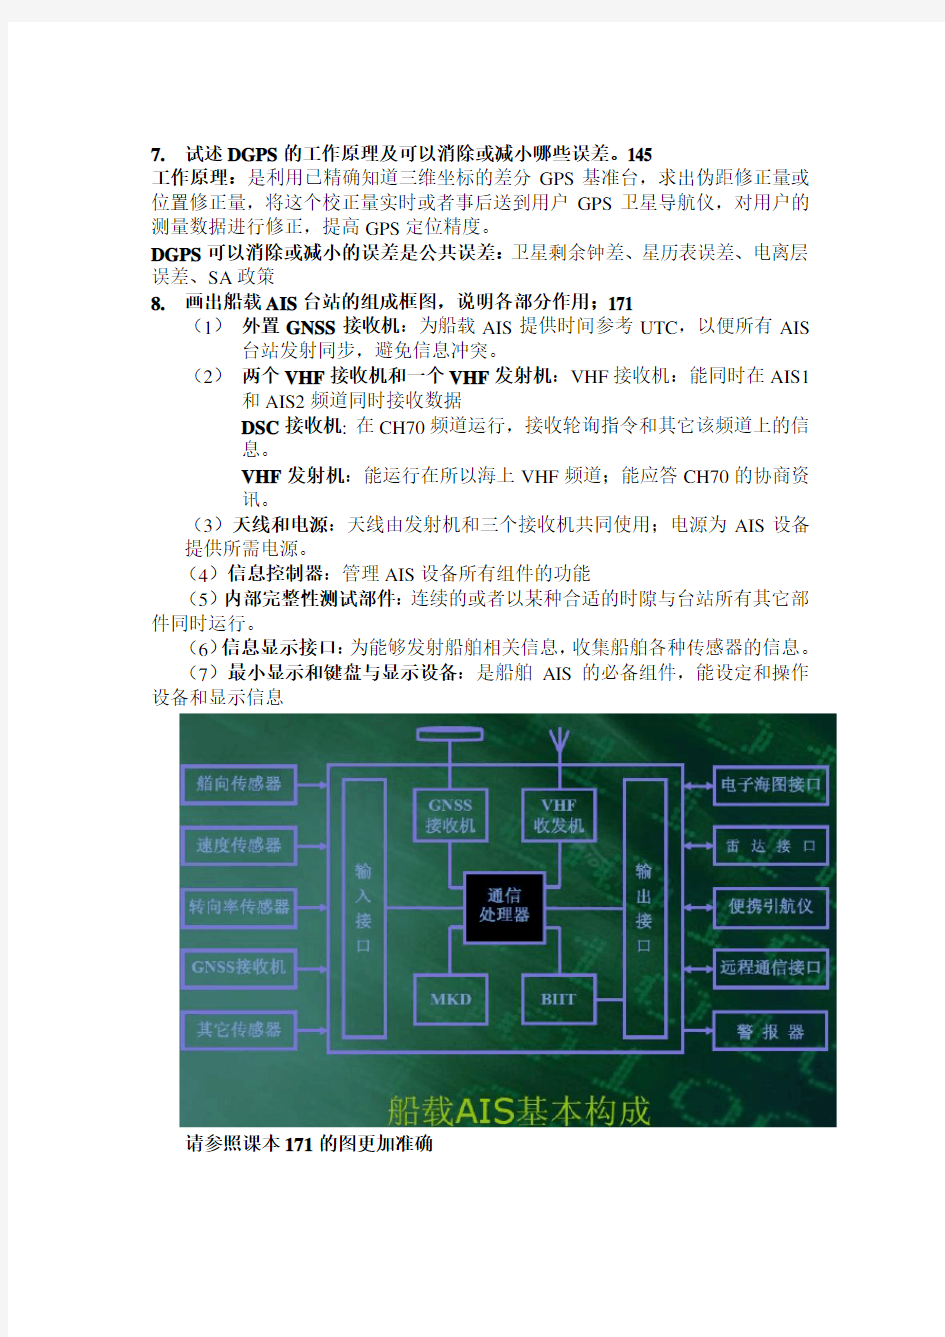 上海海事大学 船舶 电子导航信息系统练习题答案整理